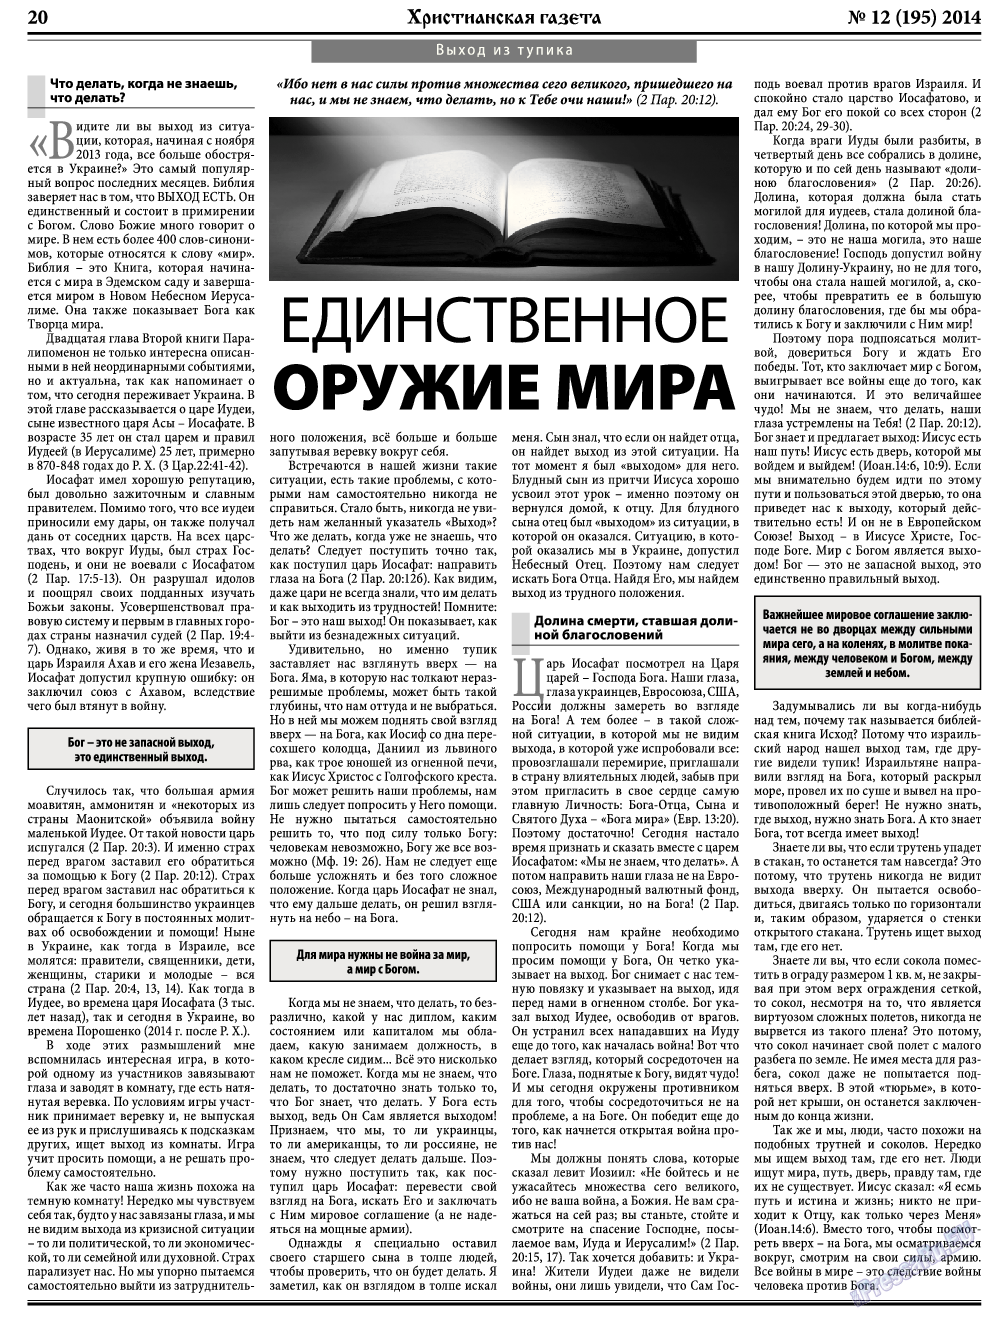 Христианская газета, газета. 2014 №12 стр.28